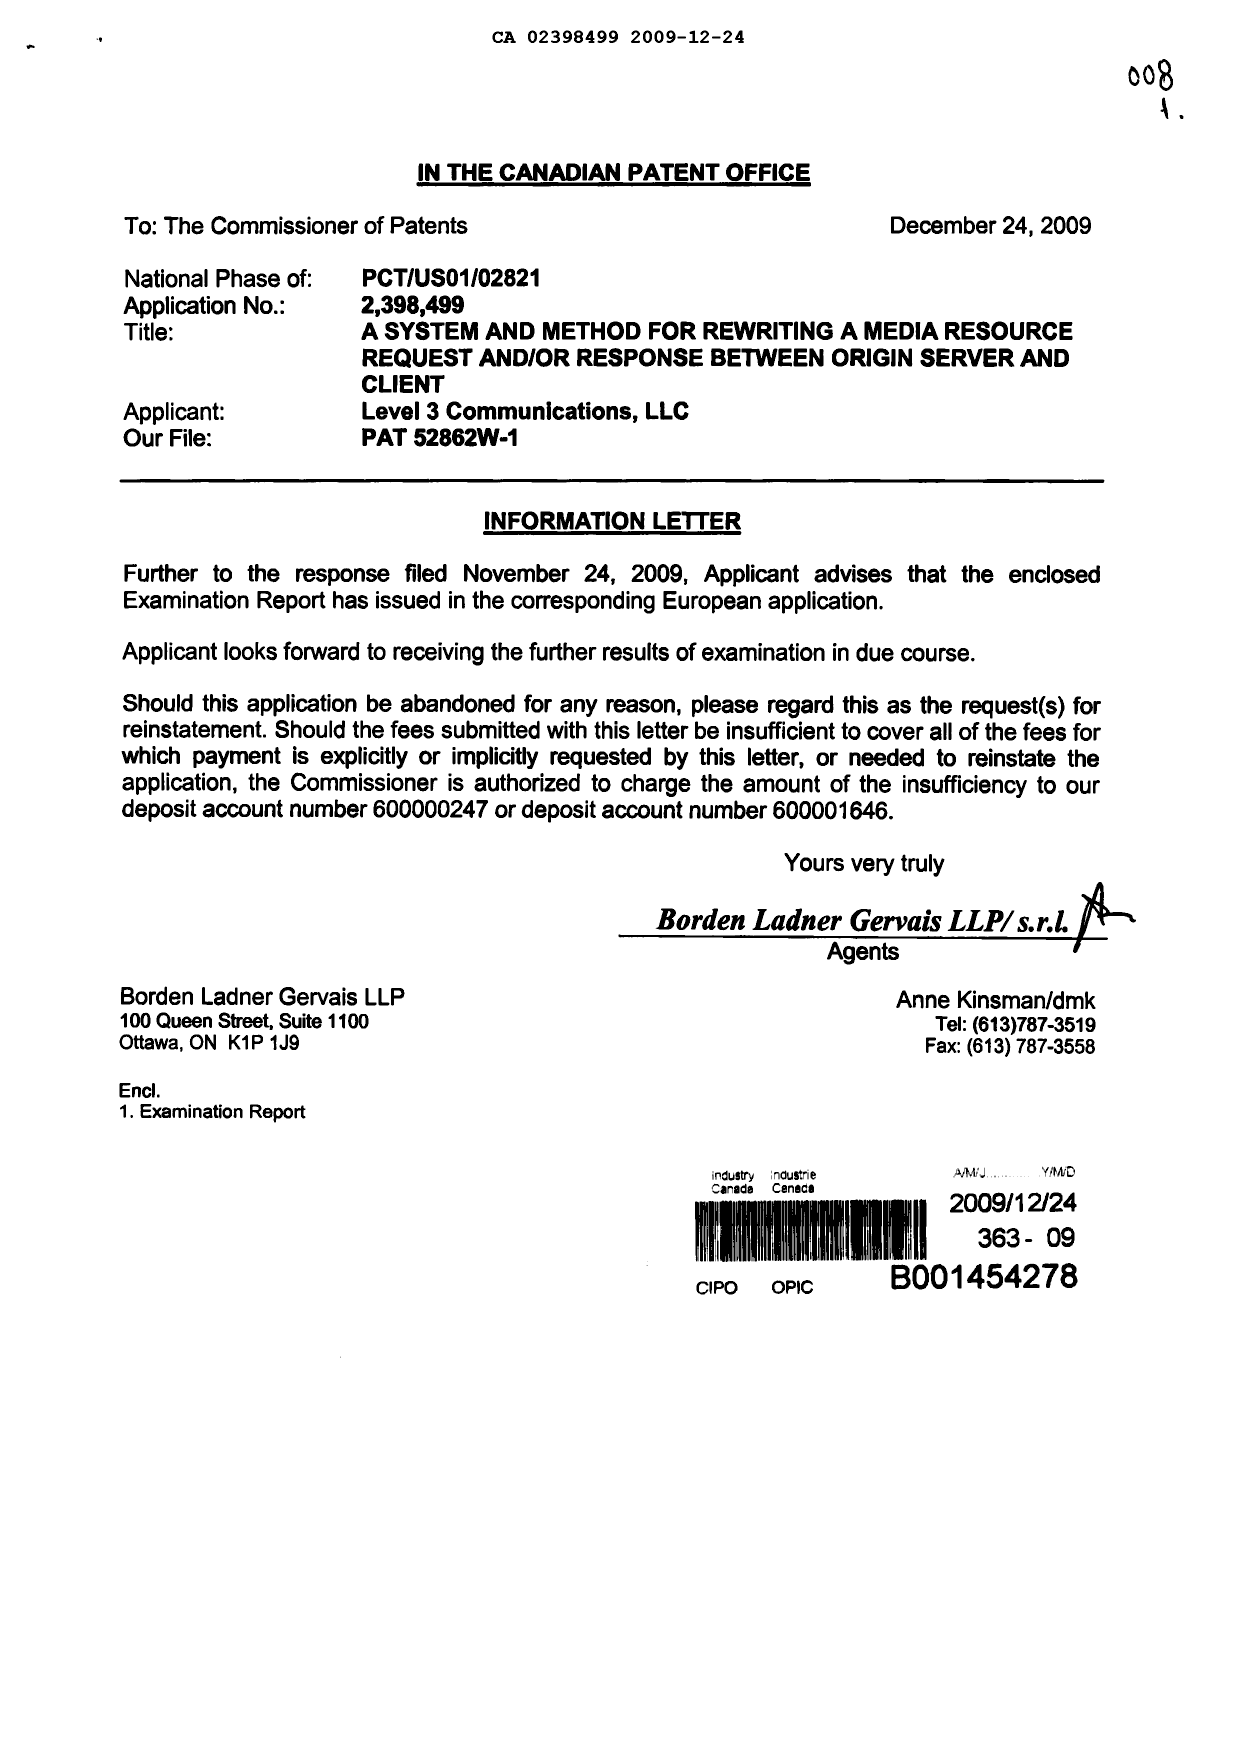 Document de brevet canadien 2398499. Poursuite-Amendment 20091224. Image 1 de 1